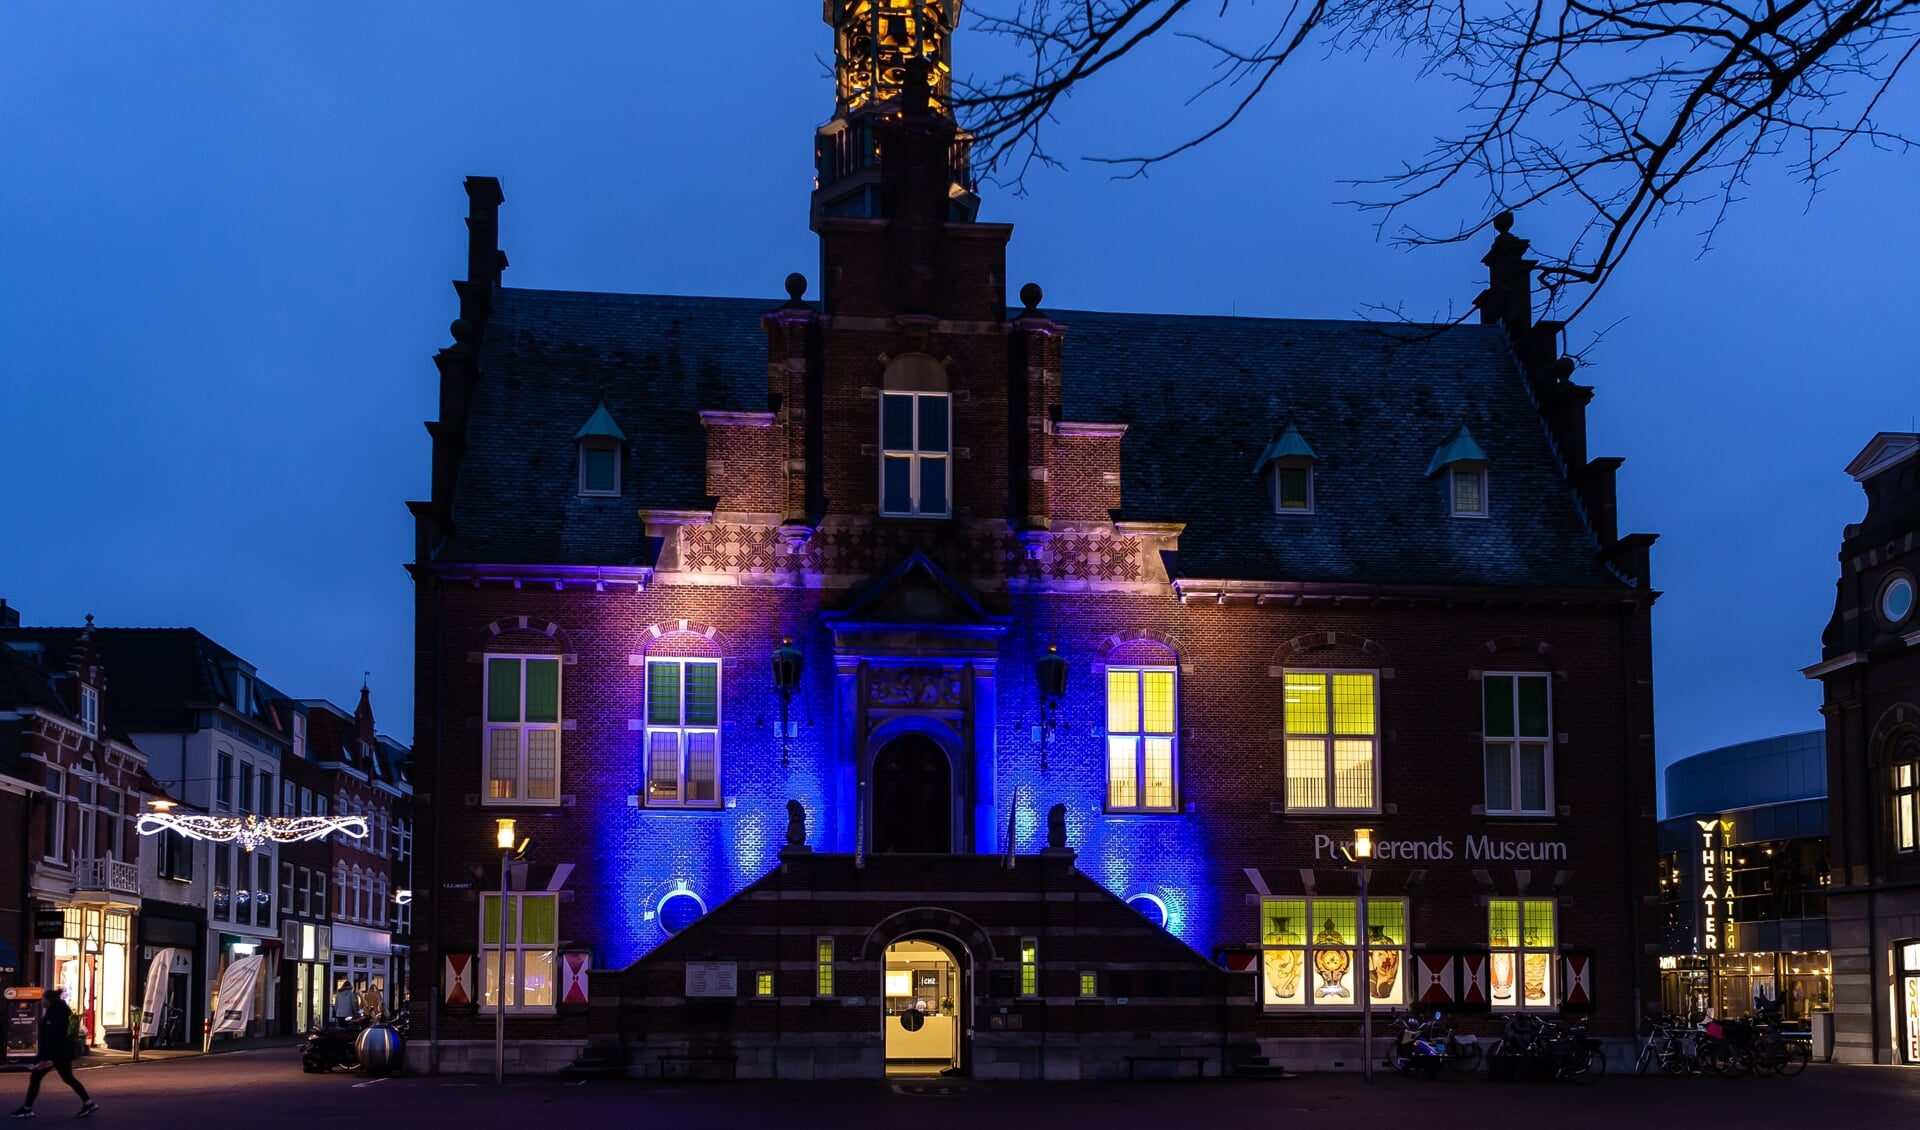 In 2019 werd het oude stadhuis al eens mooi uitgelicht. Vrijdag aanstaande wordt de gevel tijdelijk blauw en geel gekleurd. 